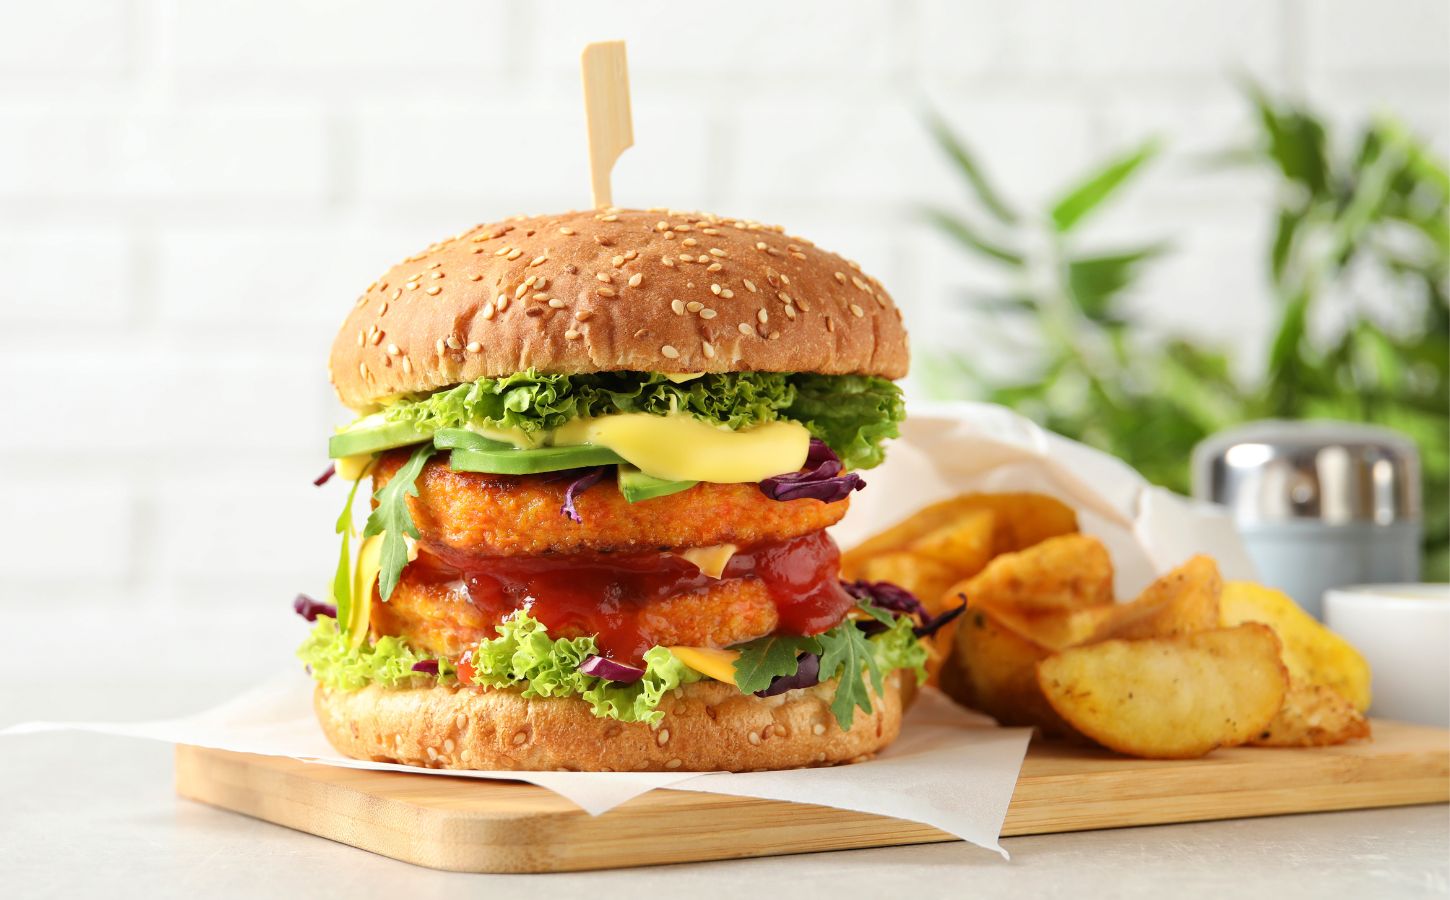 A vegan burger on a wooden plate